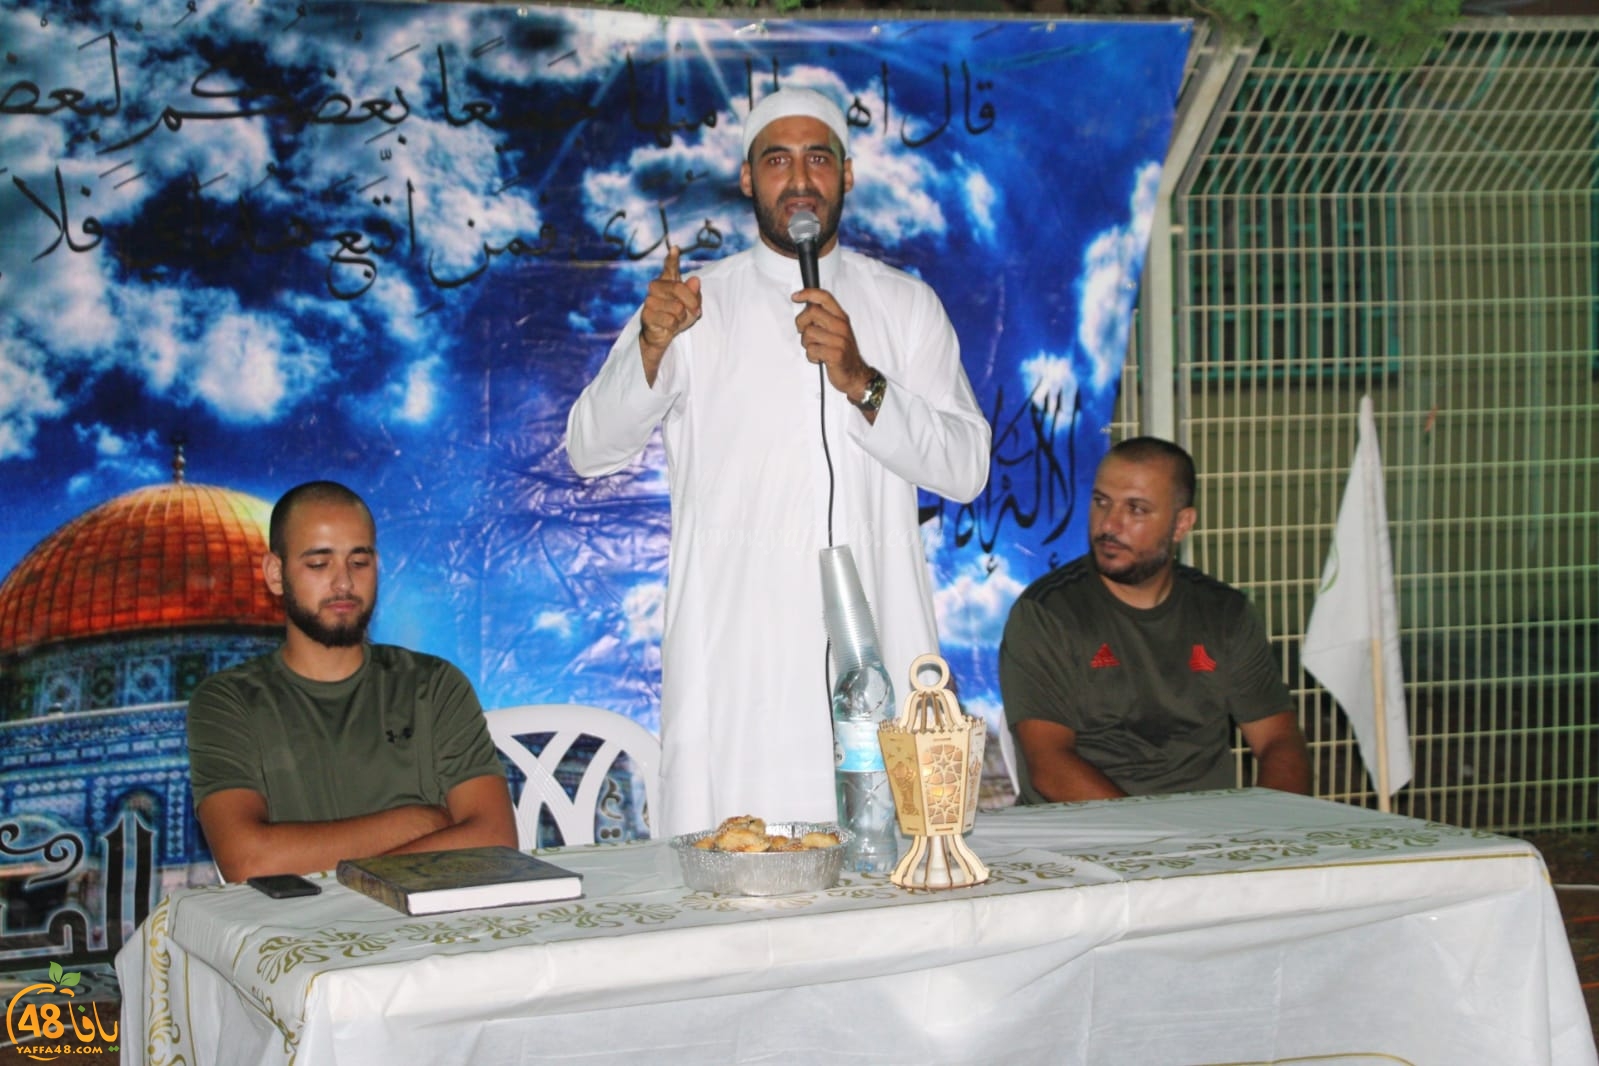  بالصور: خيمة الهدى الدعوية تُنظم أمسية دينية في ضيافة عائلة أبو قاعود بيافا 